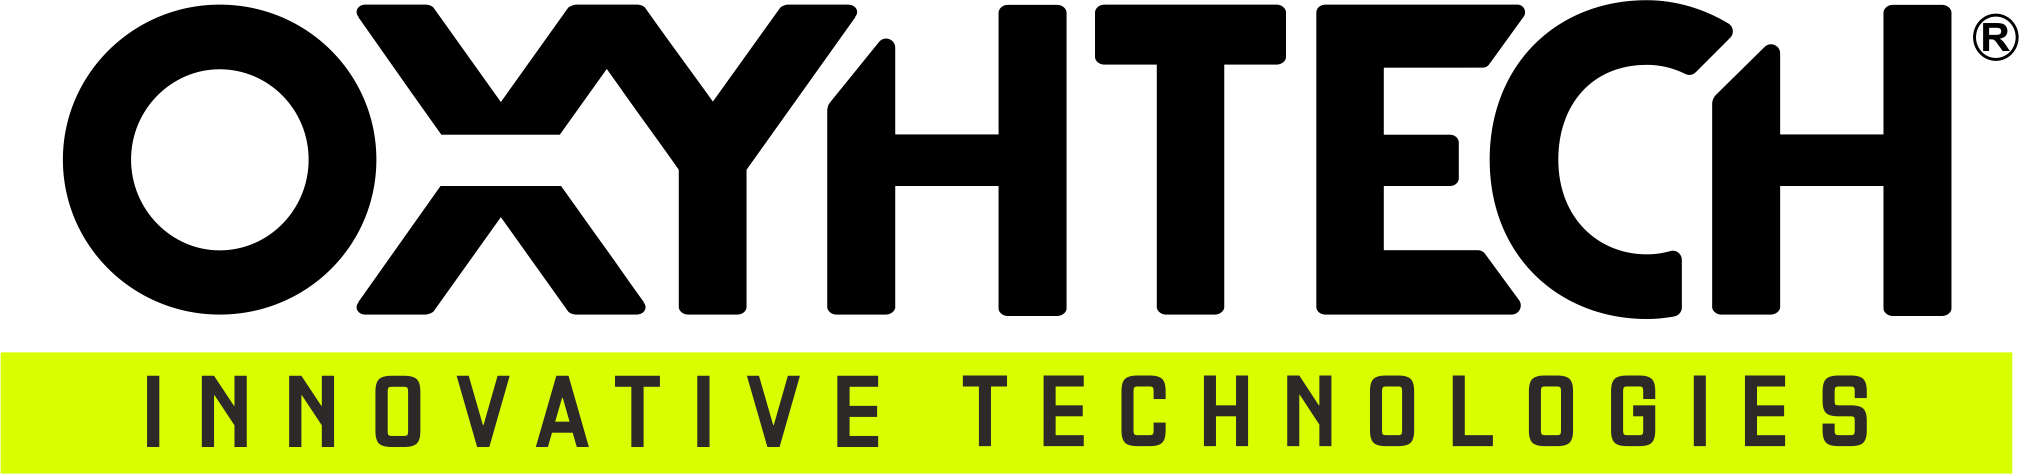 oxyhtech-technologies